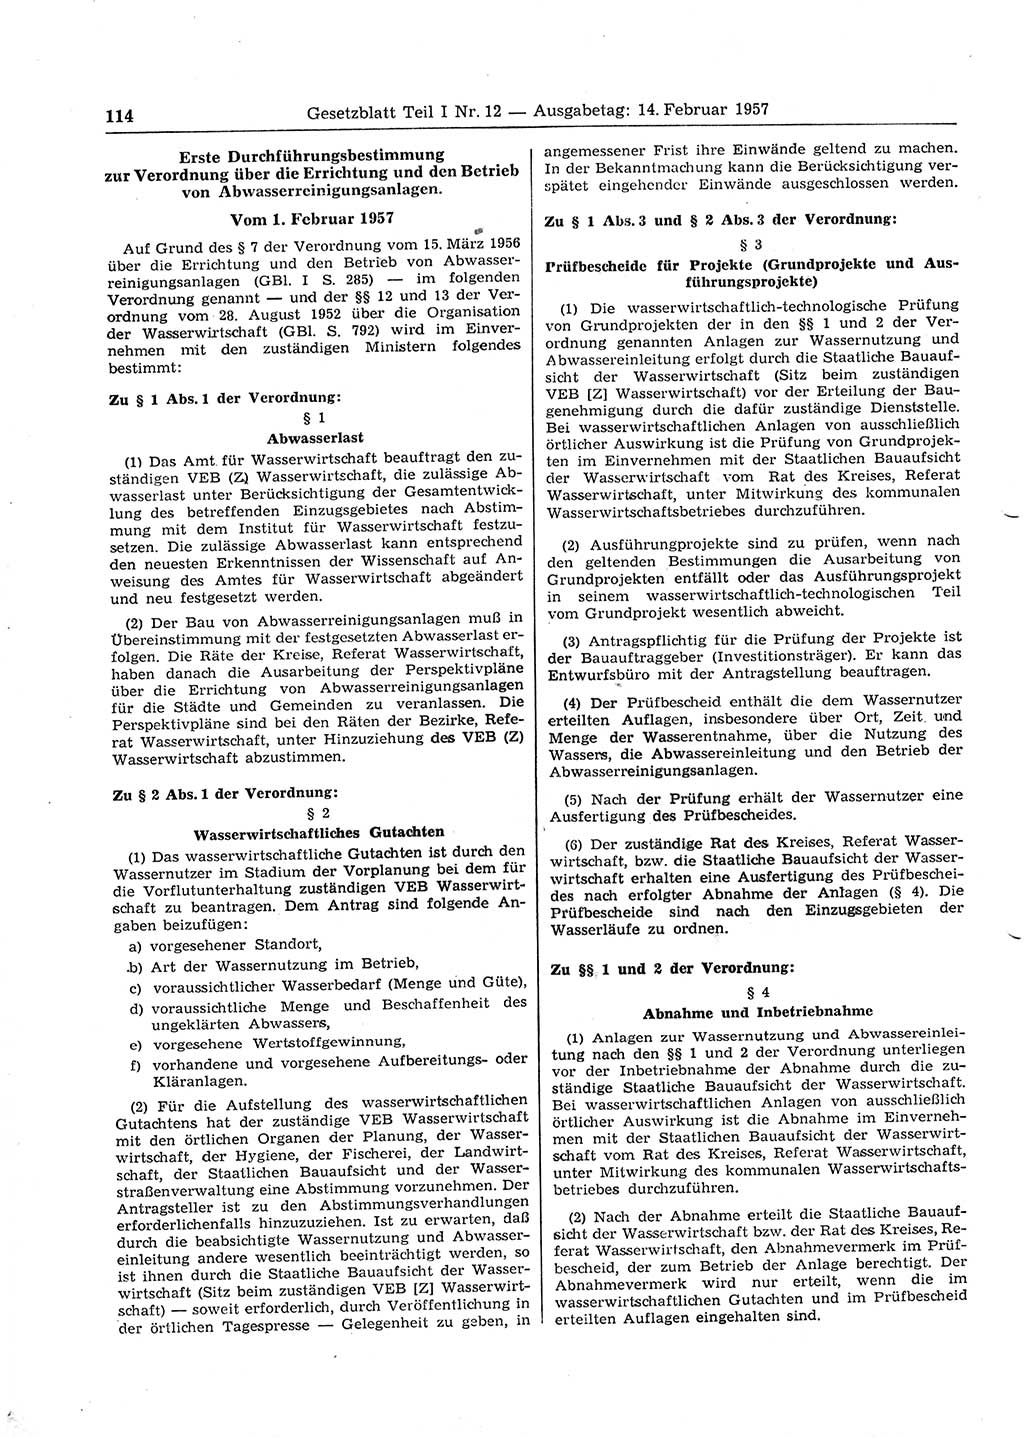 Gesetzblatt (GBl.) der Deutschen Demokratischen Republik (DDR) Teil Ⅰ 1957, Seite 114 (GBl. DDR Ⅰ 1957, S. 114)